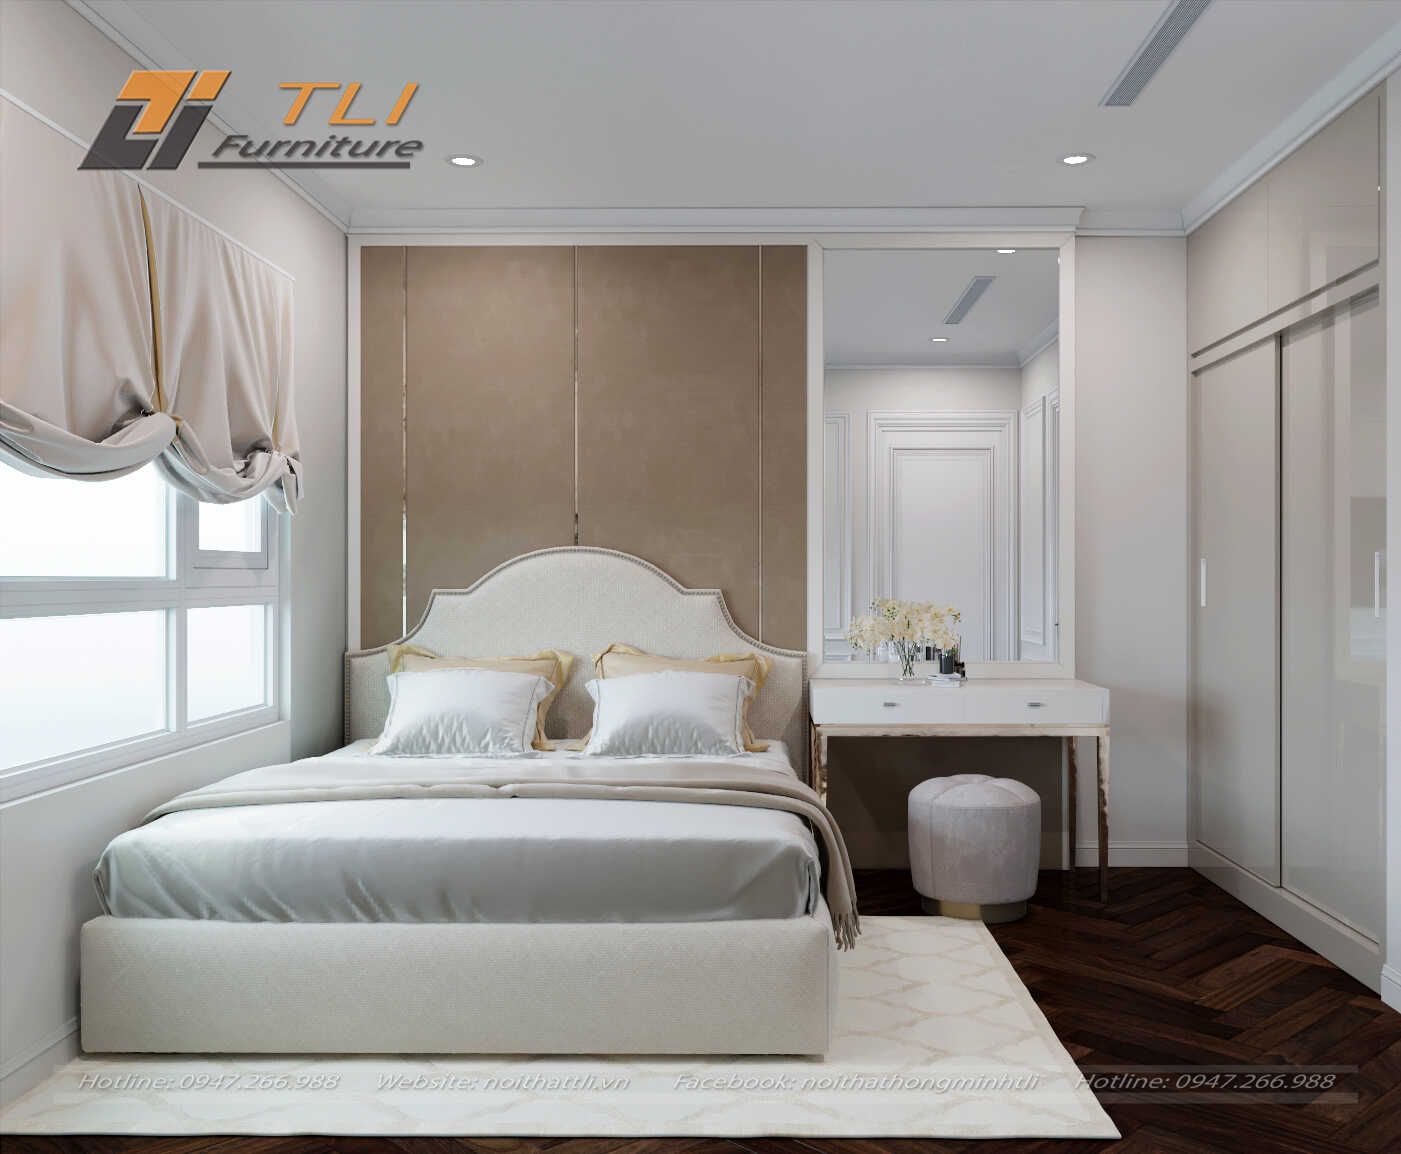 Hãy khám phá những chi tiết thiết kế nội thất phòng ngủ chung cư tinh tế và đầy ấn tượng. Tận hưởng không gian thoải mái và tiện nghi đầy đủ cho một giấc ngủ ngon giấc, cùng xây dựng không gian sống lý tưởng cho chính bạn.